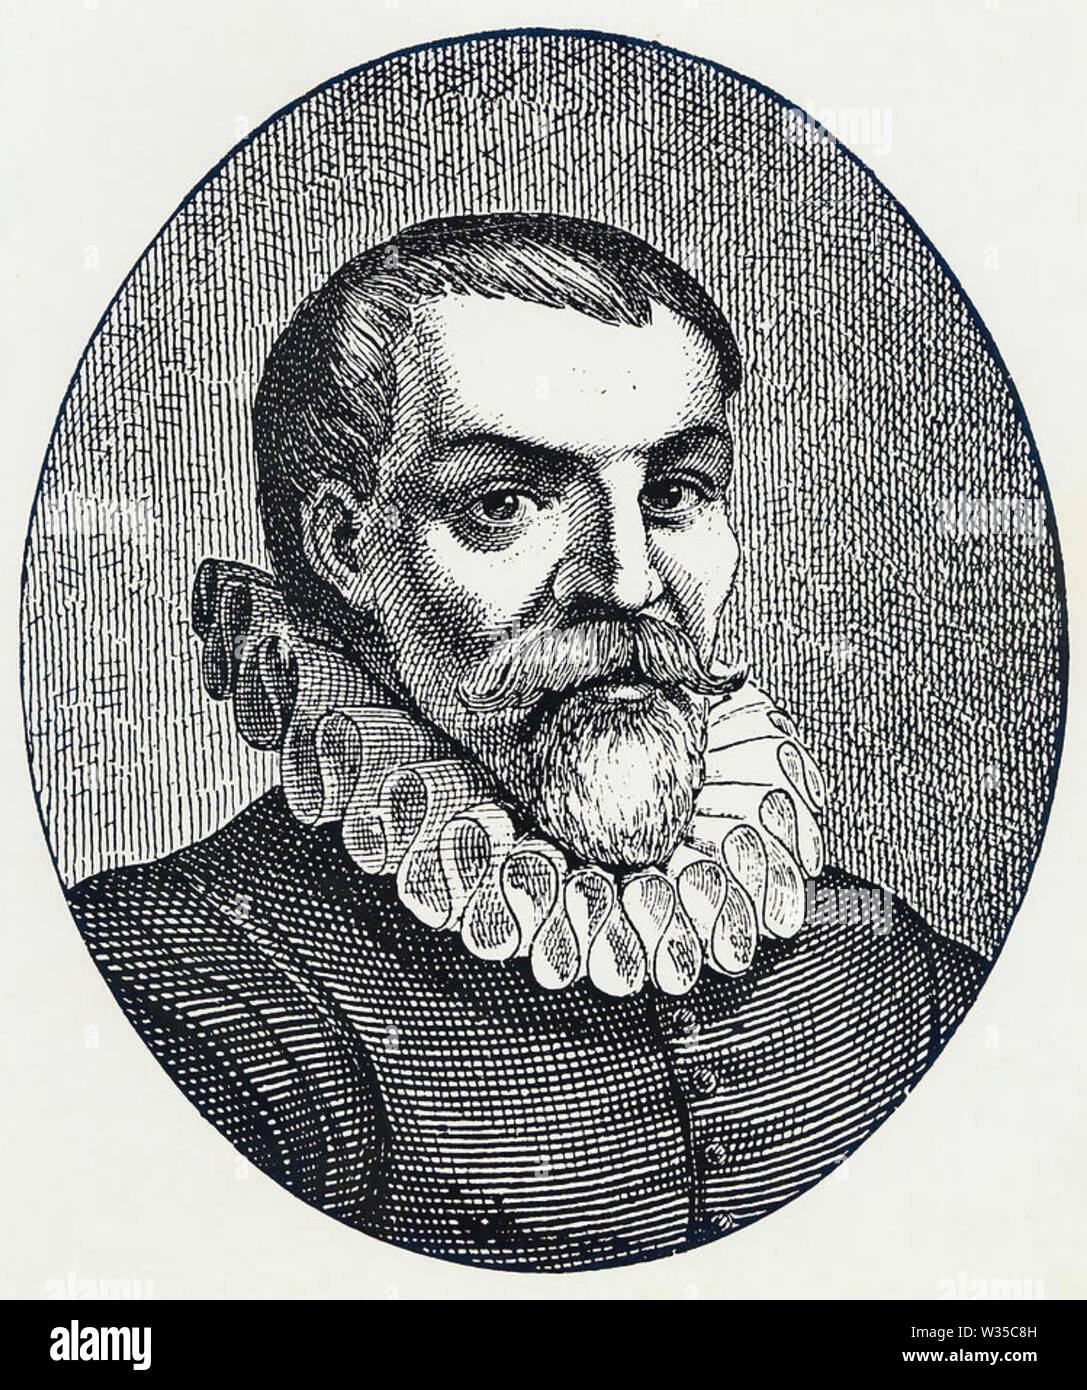 WILLEM BARENTSZ (c 1550-1597) Dutch navigator, cartographer and Arctic explorer Stock Photo